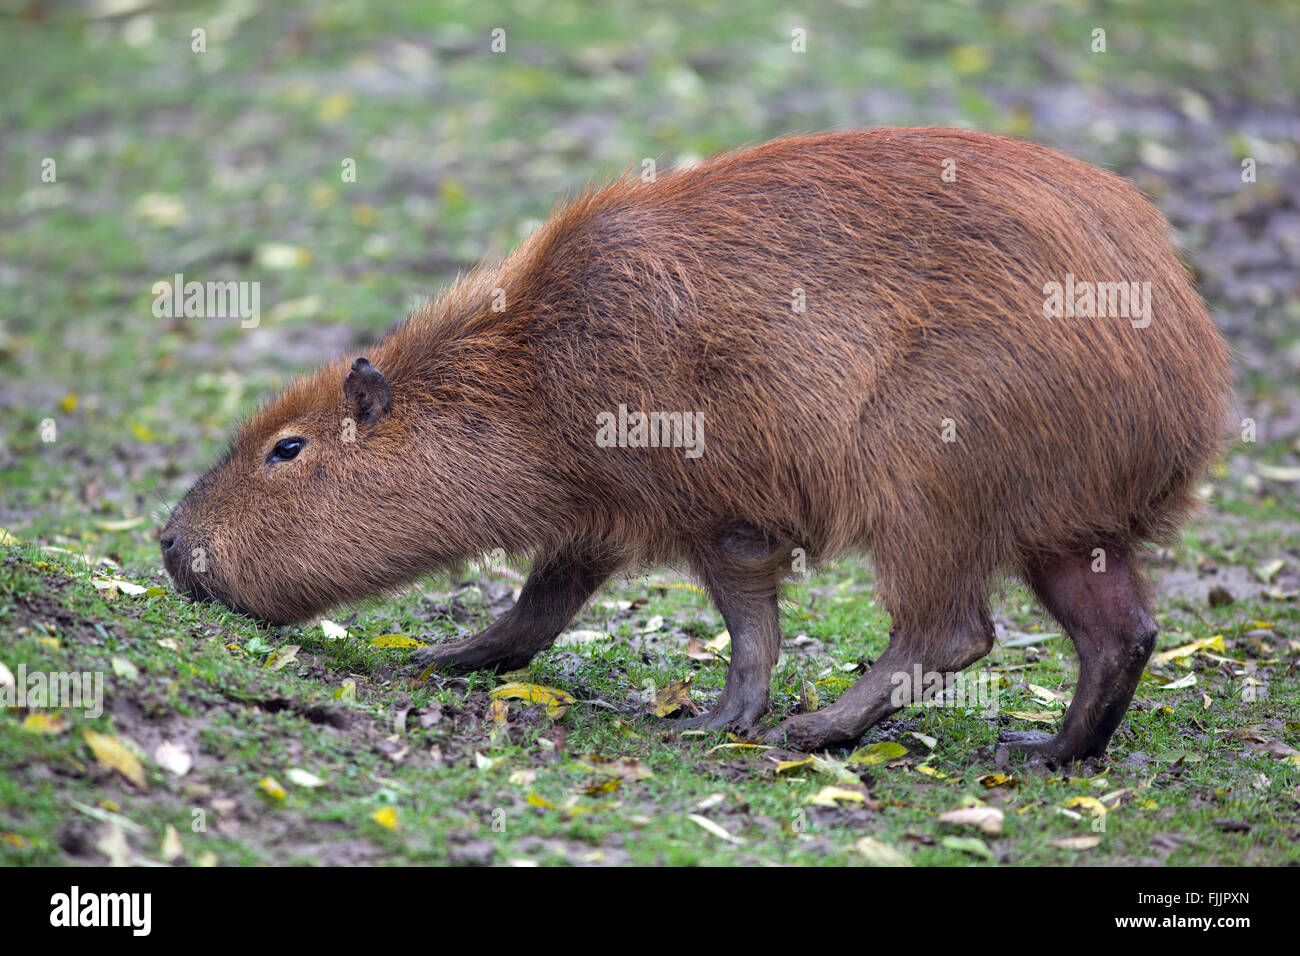 Capybara (Hydrochoerus hydrochaeris). Grazing on land. Profile. Stock Photo